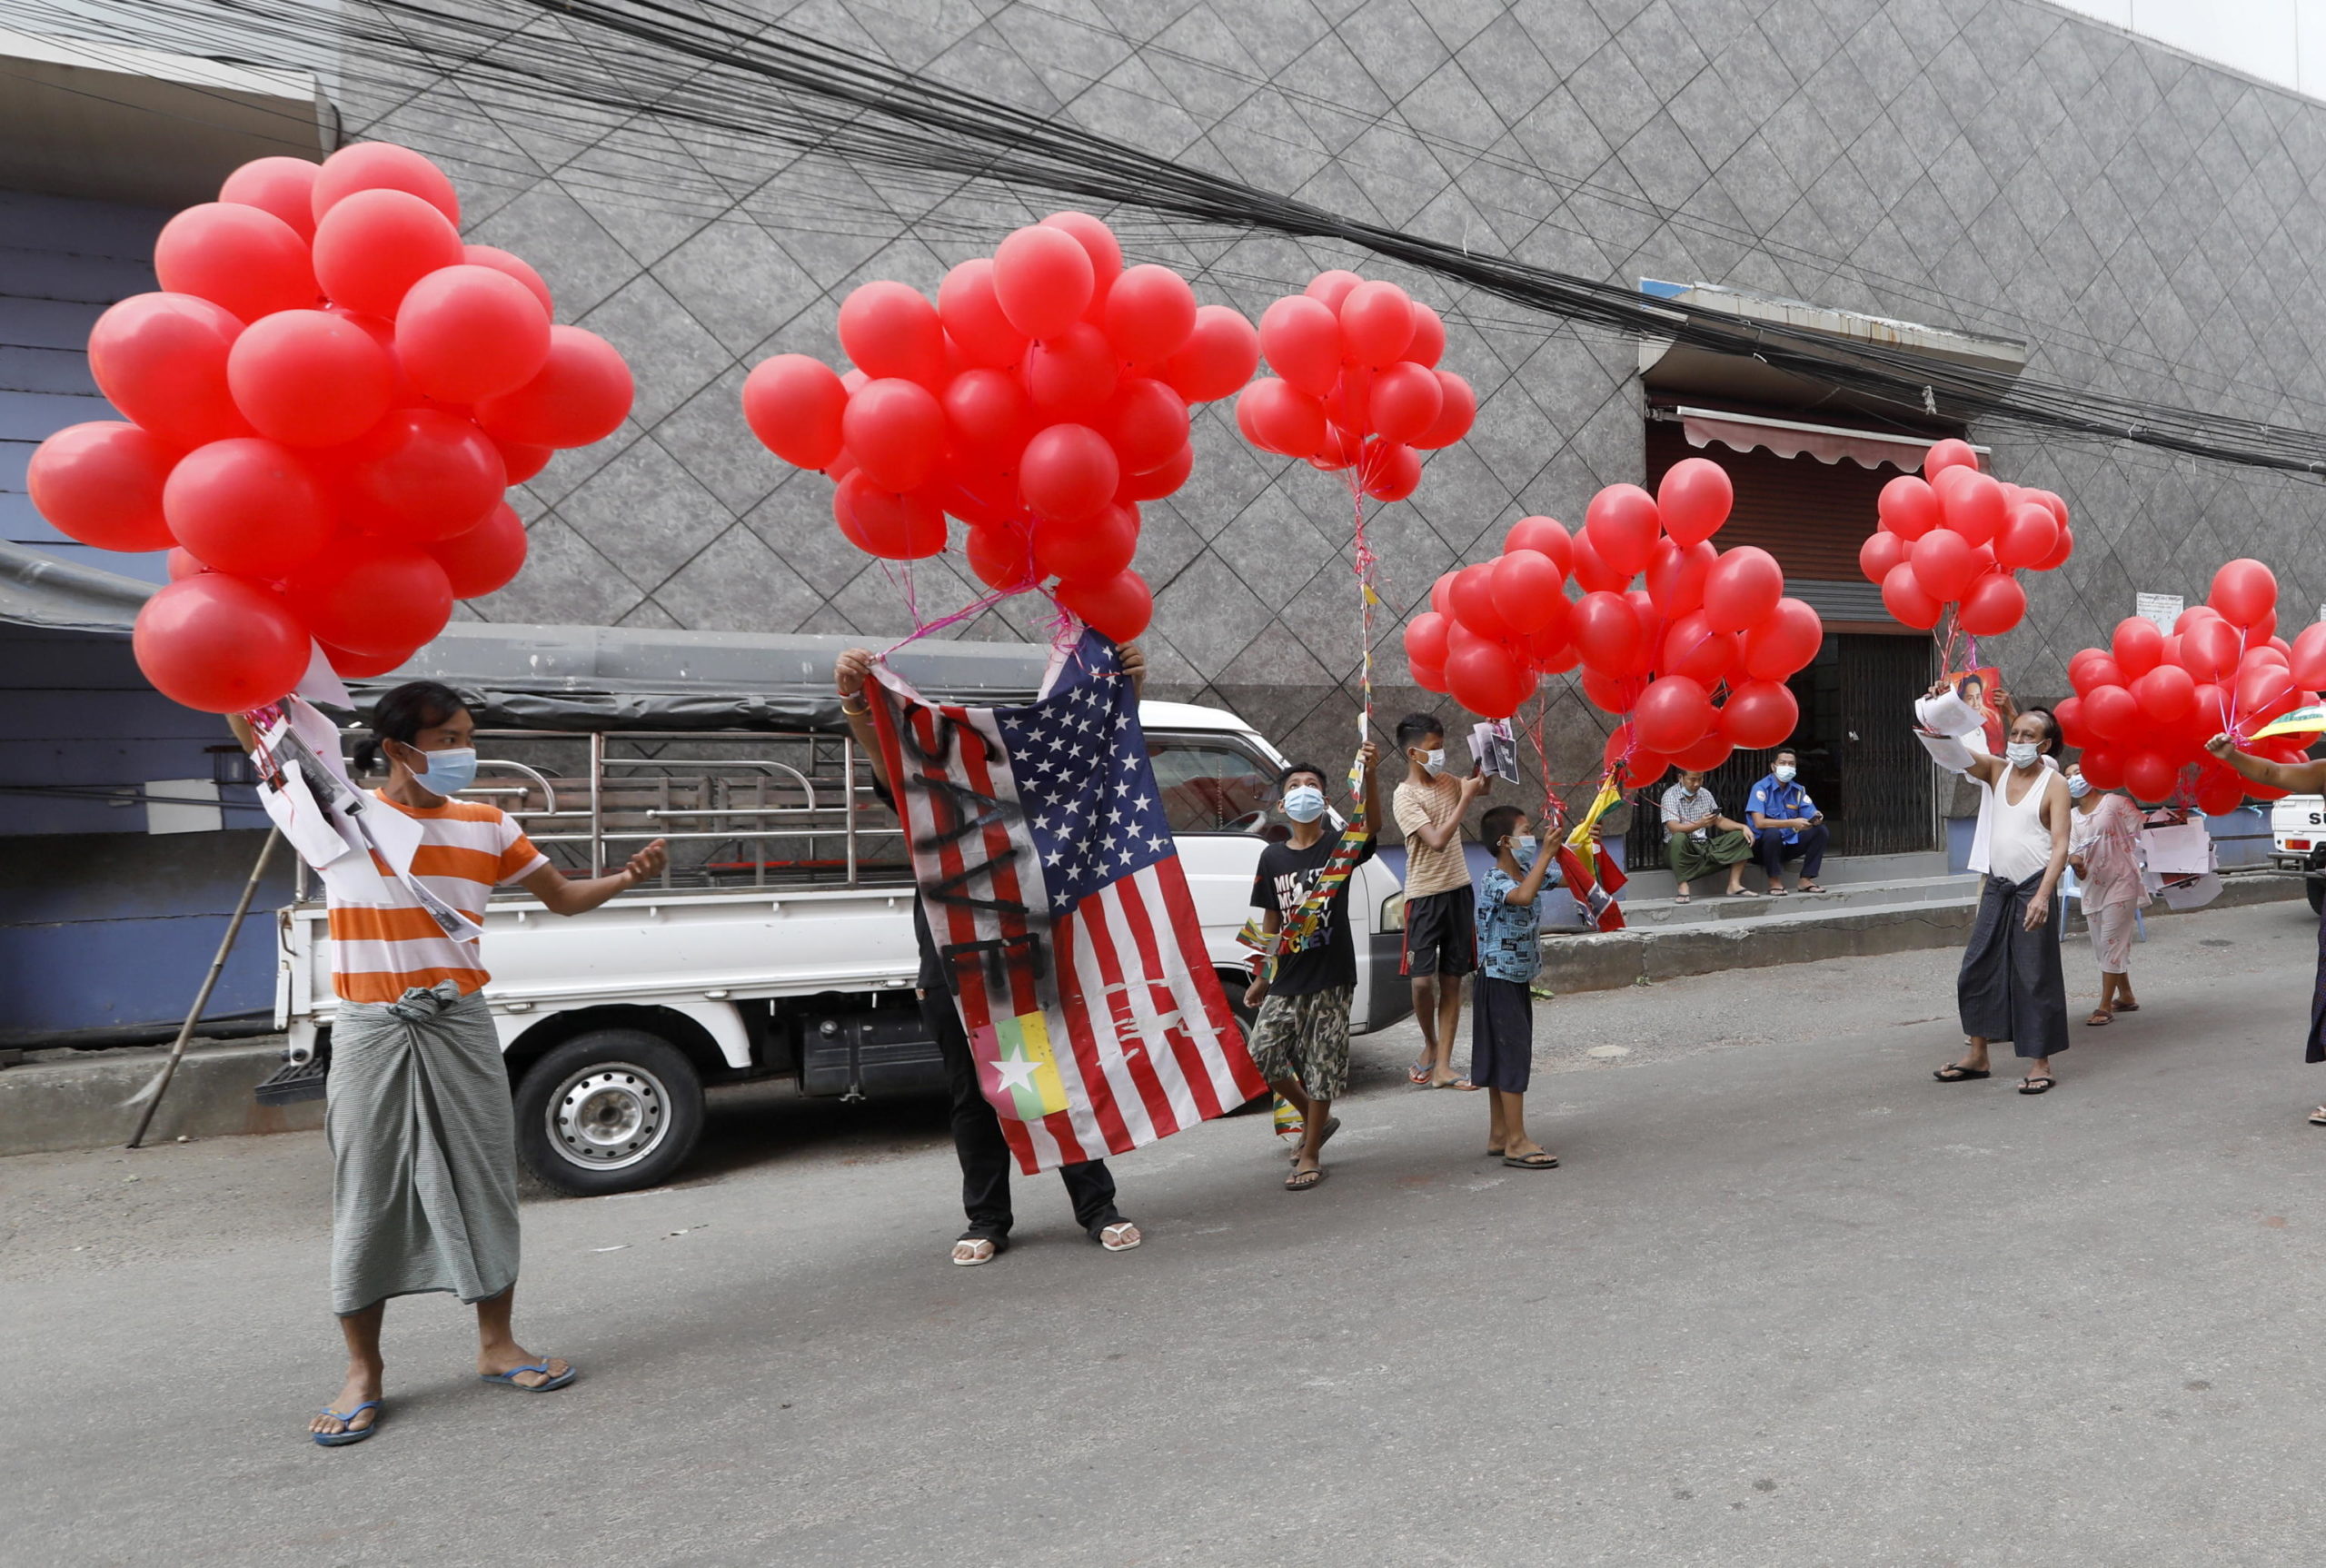 Manifestanti a Yangon sventolano una bandiera americana che riporta la scritta "Save"